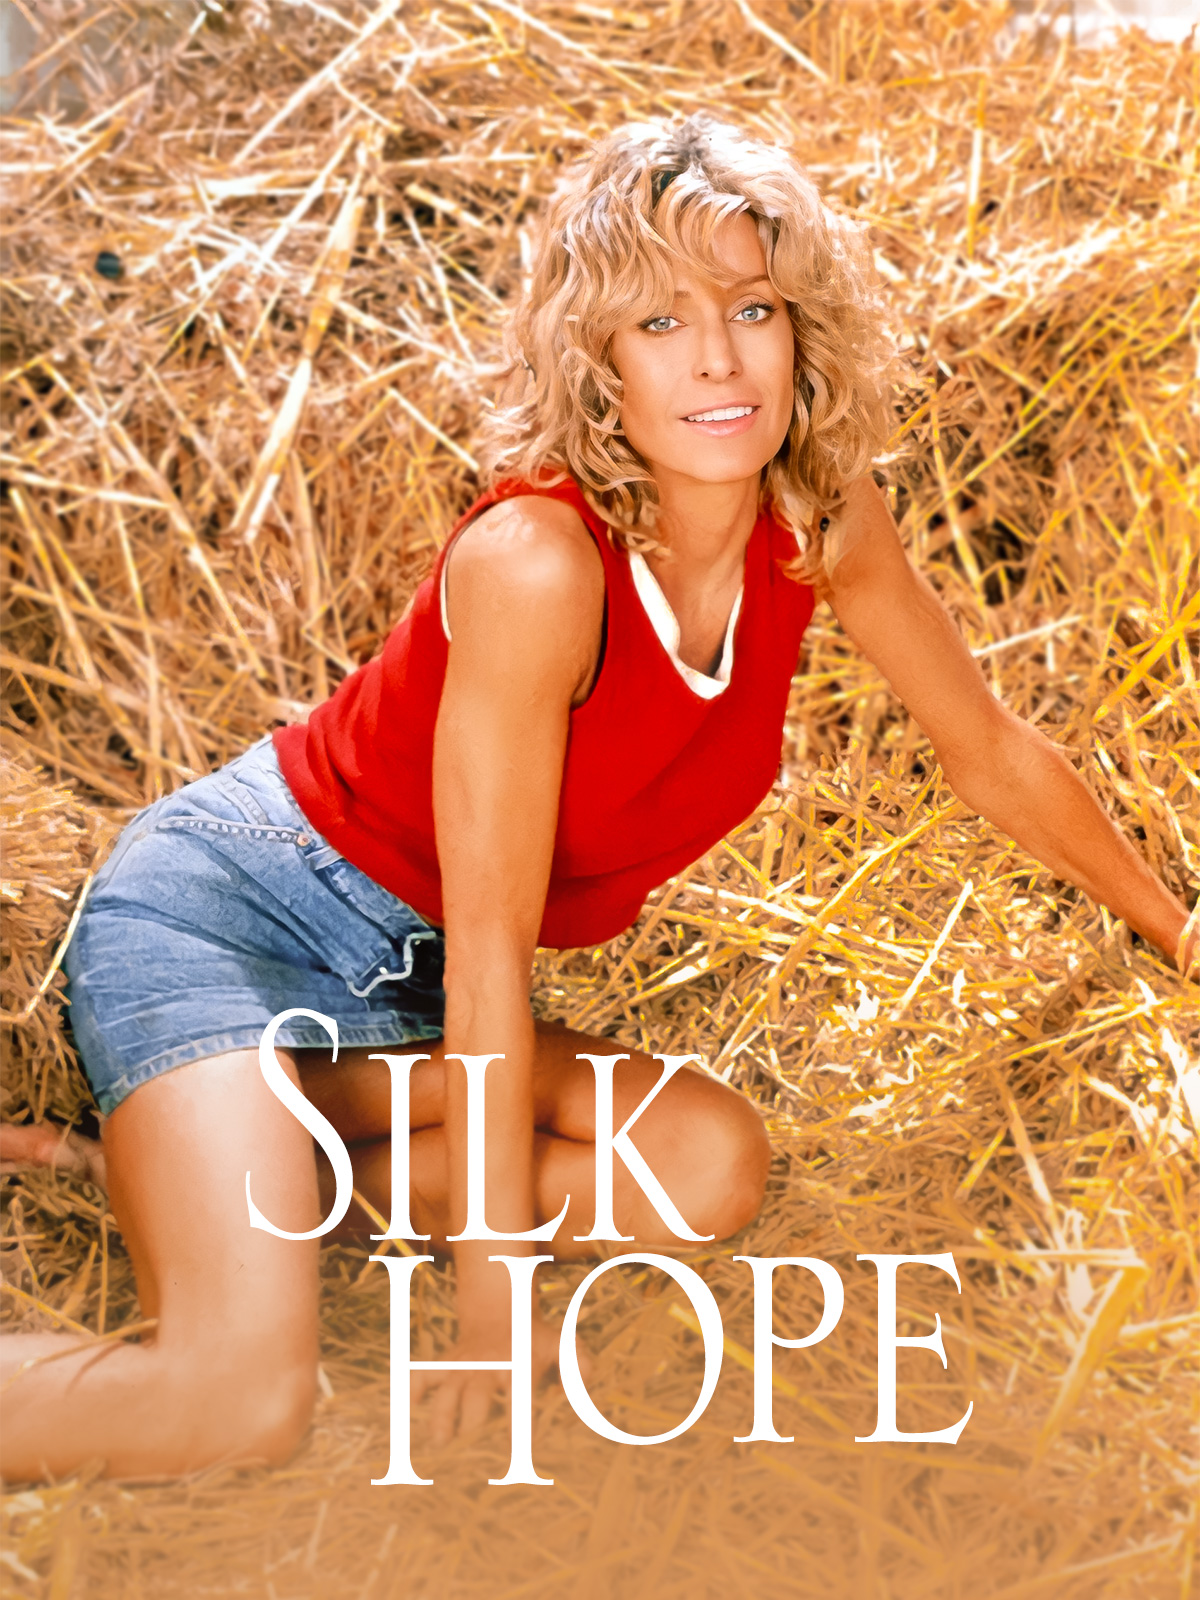 Silk Hope (1999) starring Farrah Fawcett on DVD on DVD